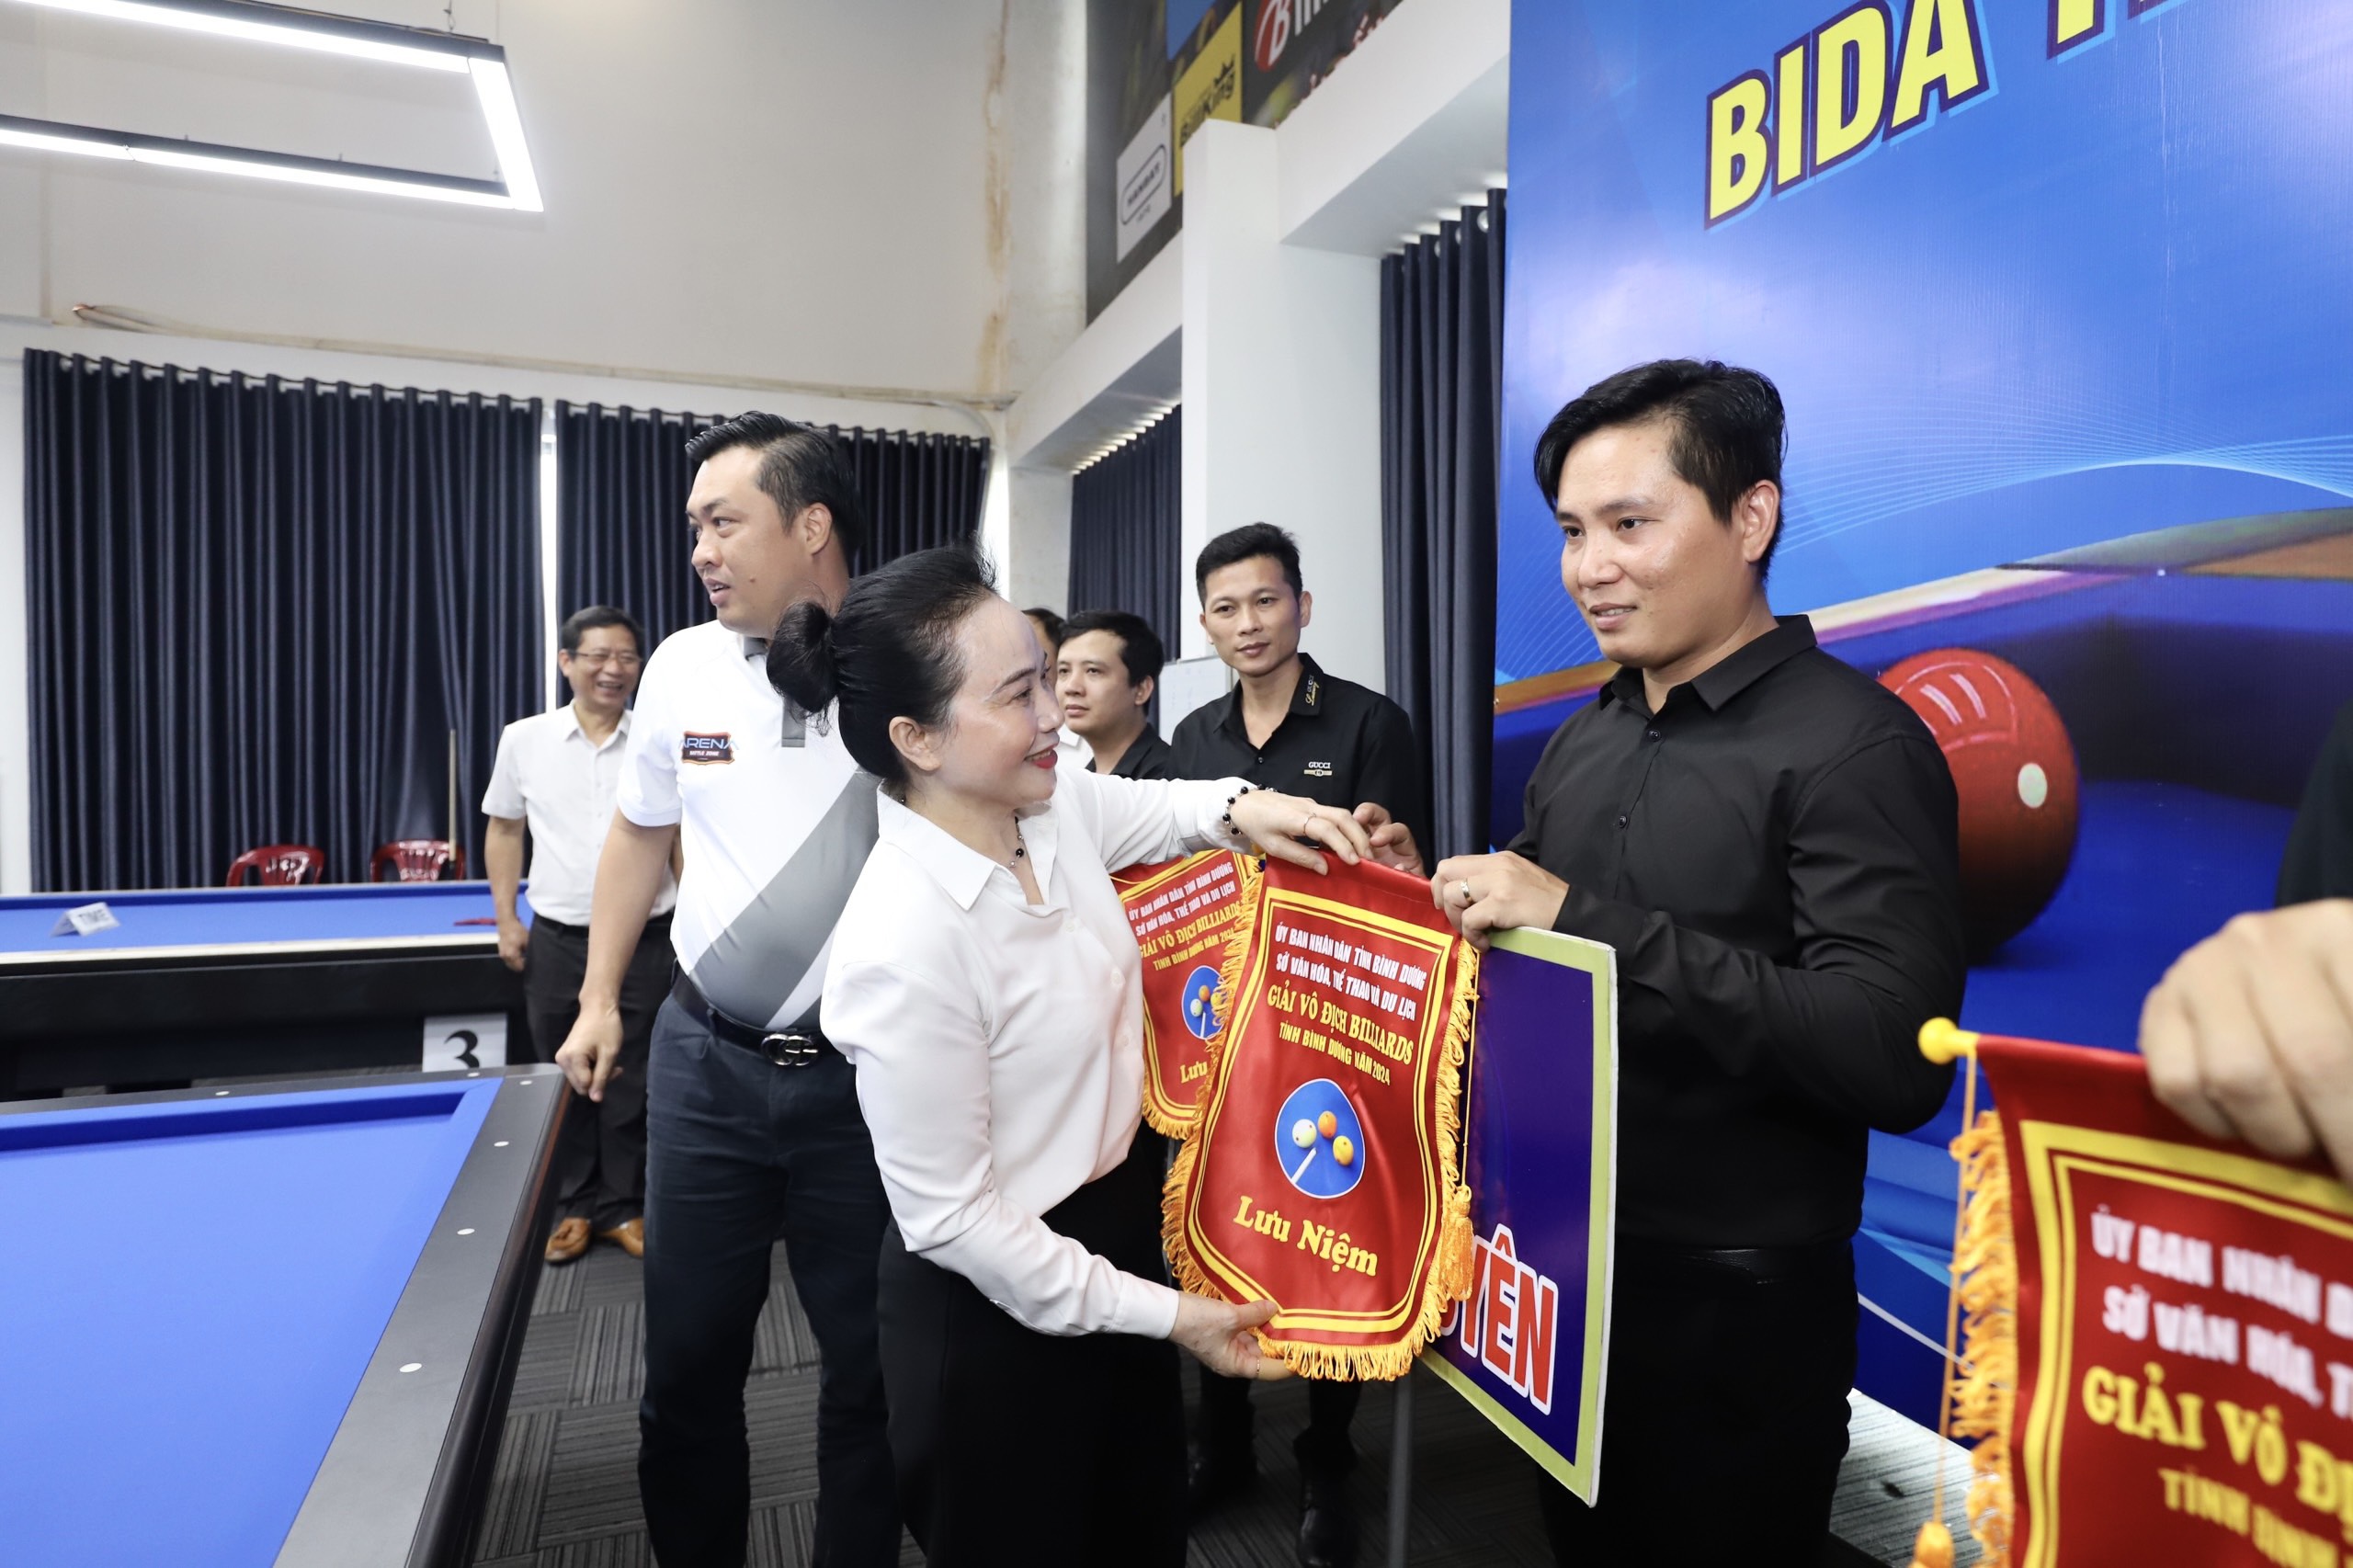 Bà Nguyễn Thị Lệ Trinh – Chủ tịch Hội chữ thập đỏ tỉnh Bình Dương tặng cờ lưu niệm cho các đơn vị tham dự giải